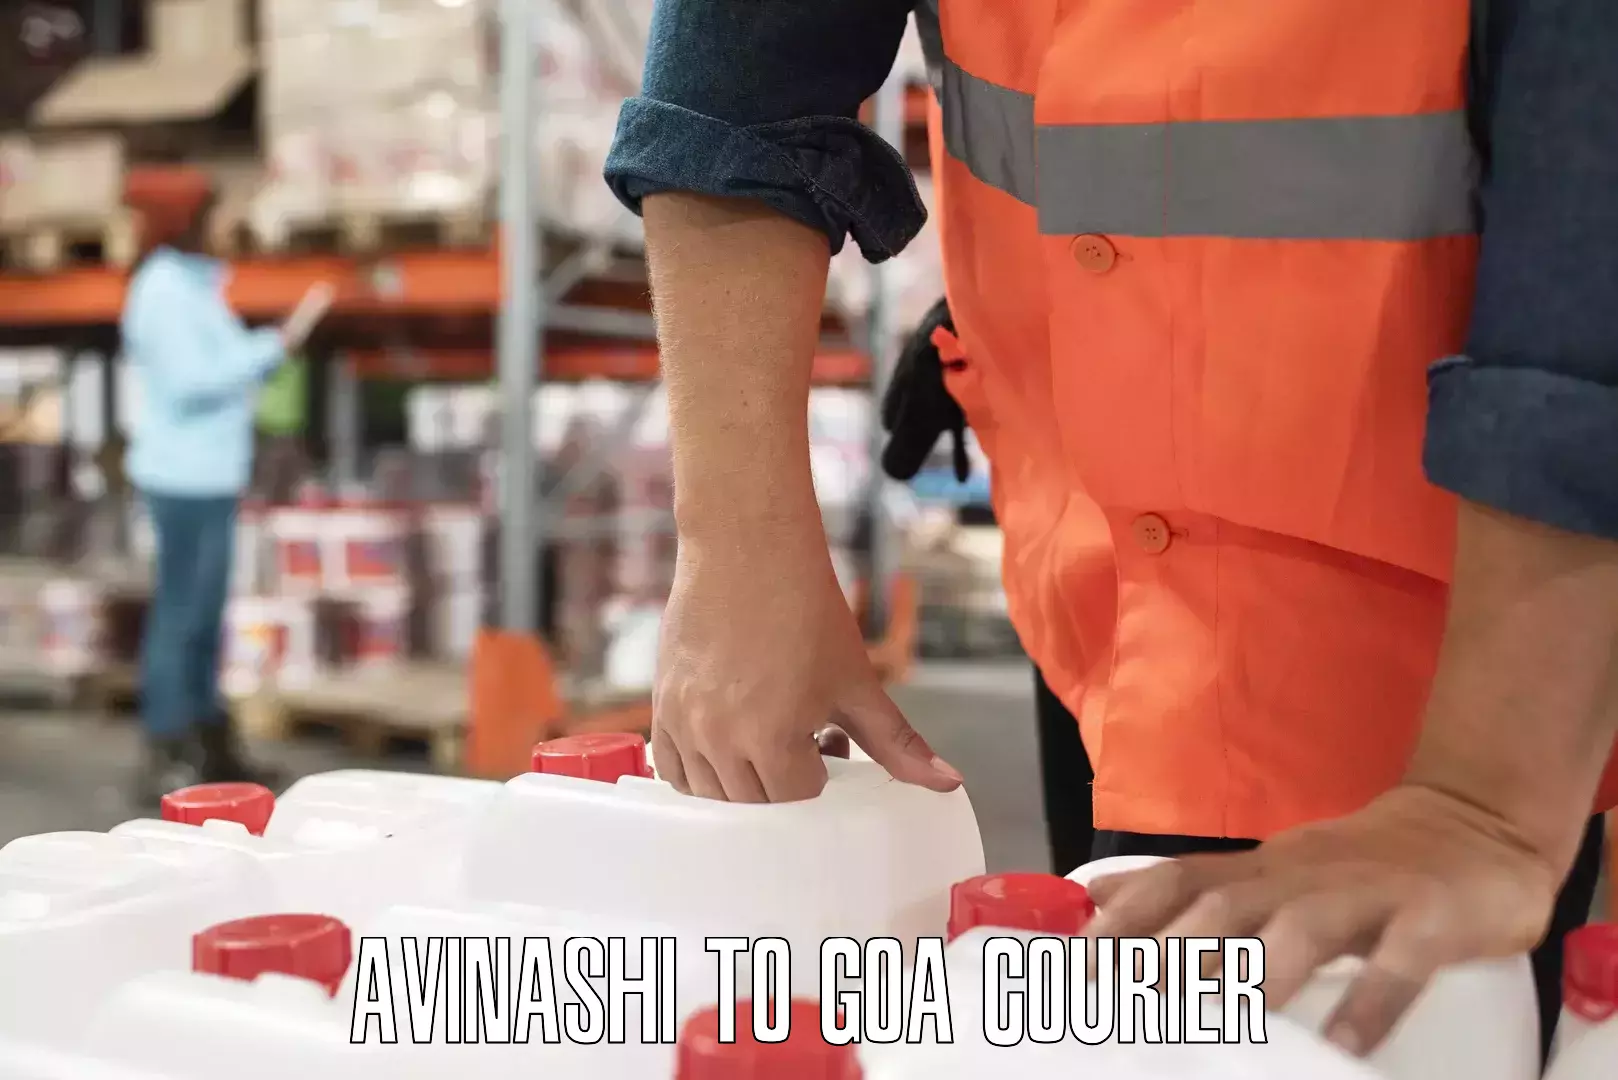 Quality courier services Avinashi to Goa